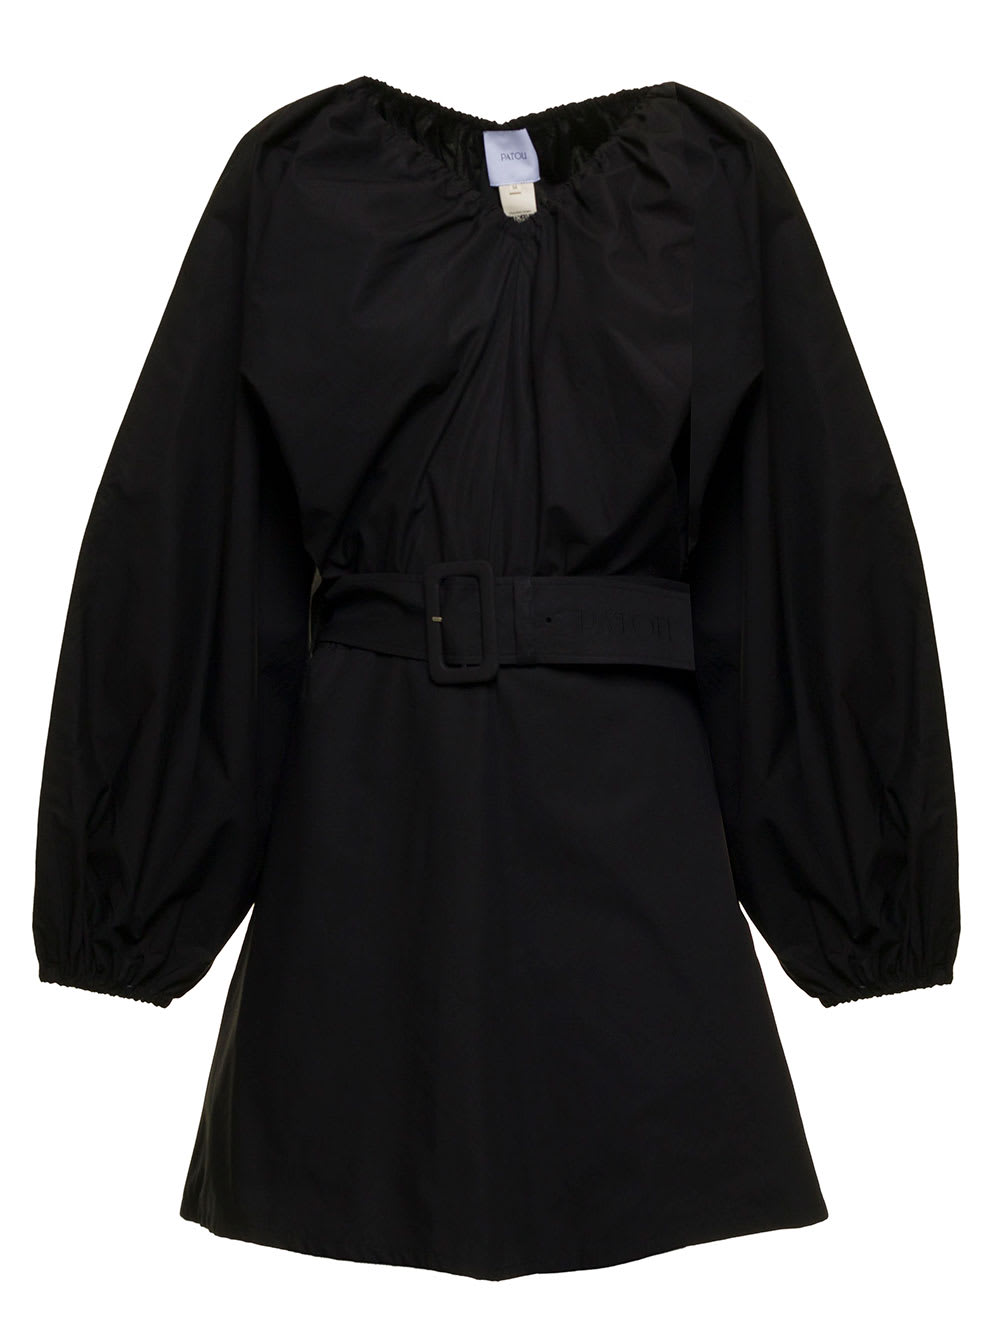 Patou Womans Black Cotton Dress With Belt